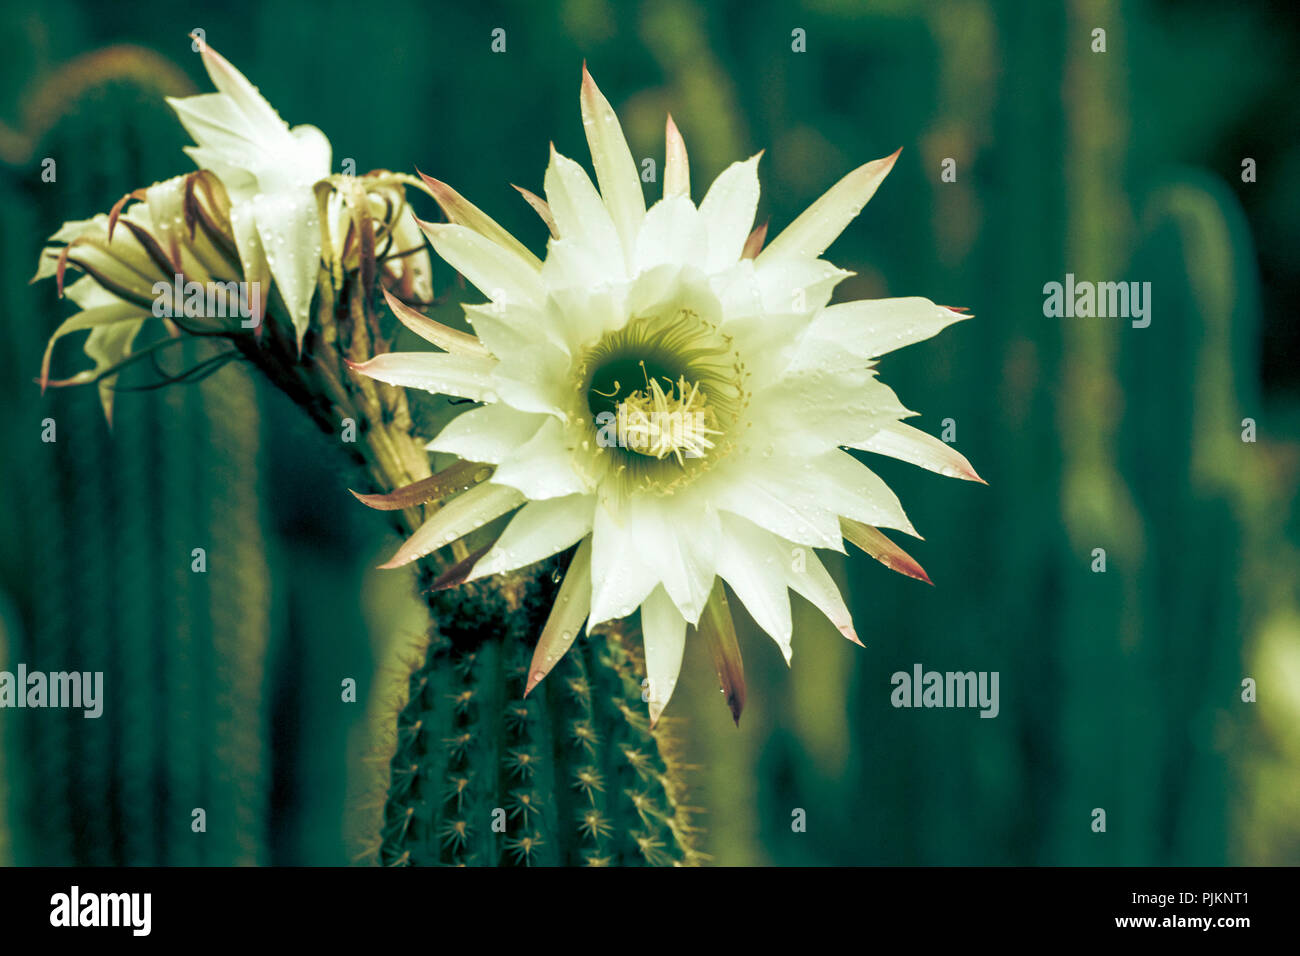 A big cactus blossom in bright white, Stock Photo